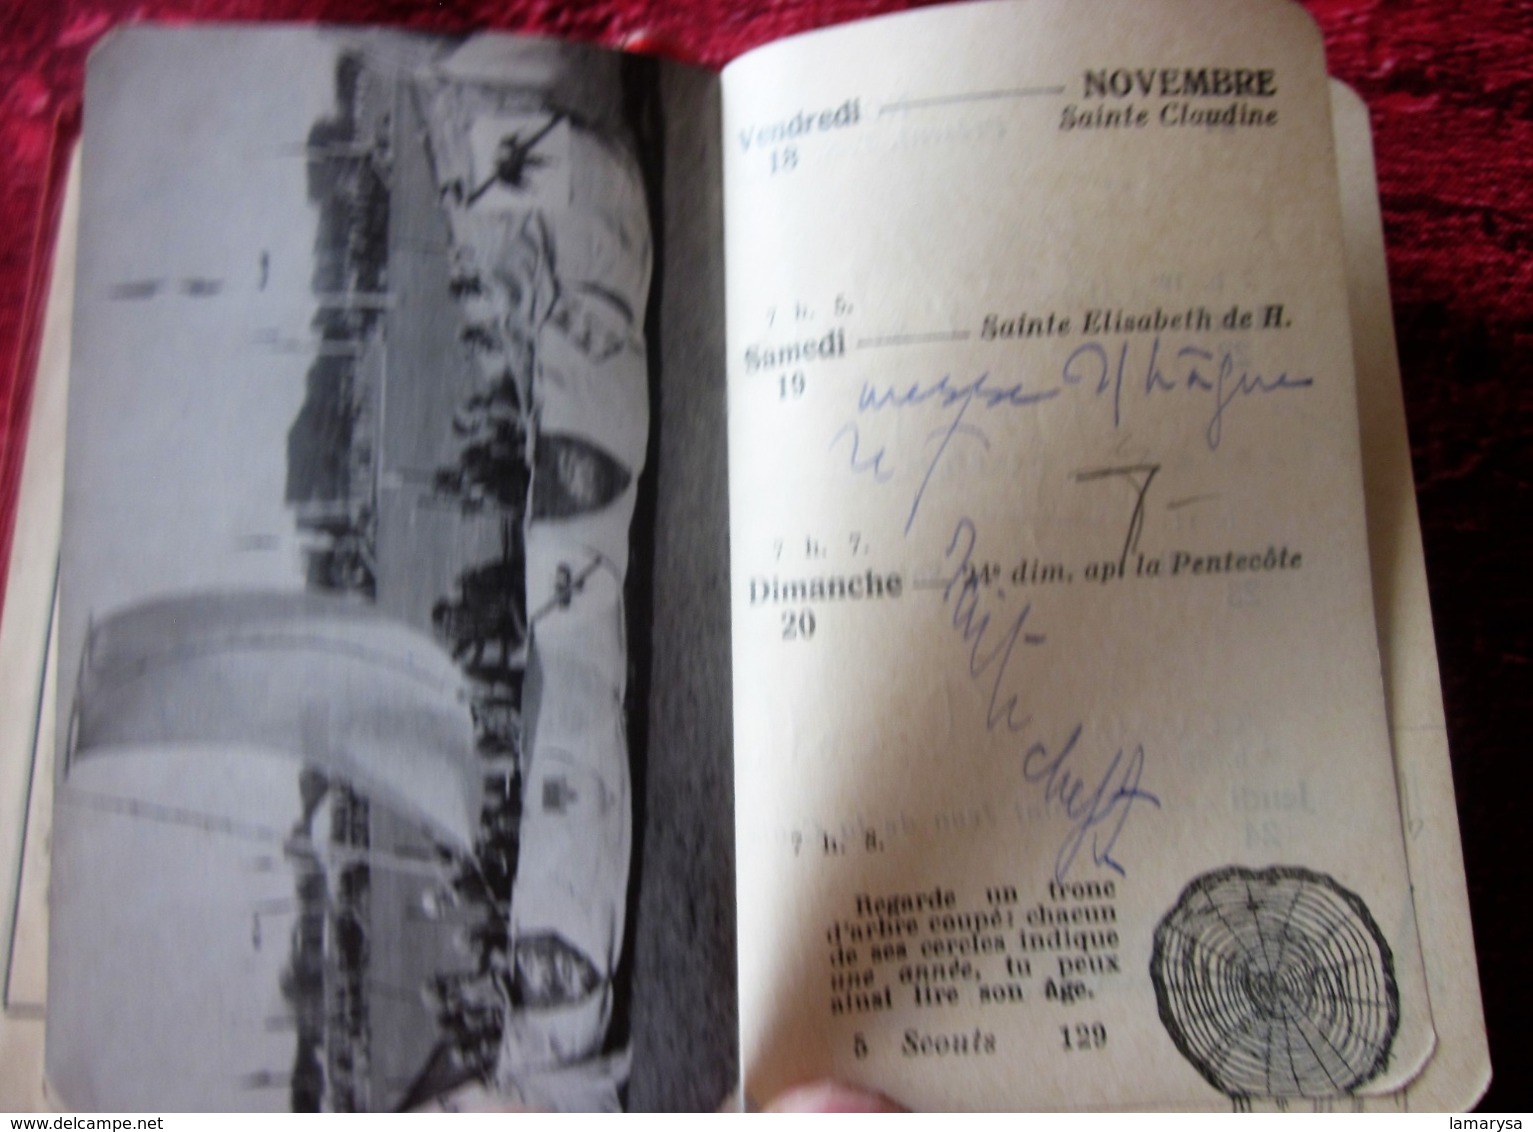 1938 AGENDA PALBA GUIDES DE FRANCE-LOI SCOUTE-PHOTOS-NOTES-JAMBOREE SCOUT INTERNATIONAL CONÇU SPÉCIALEMENT PR SCOUTISME